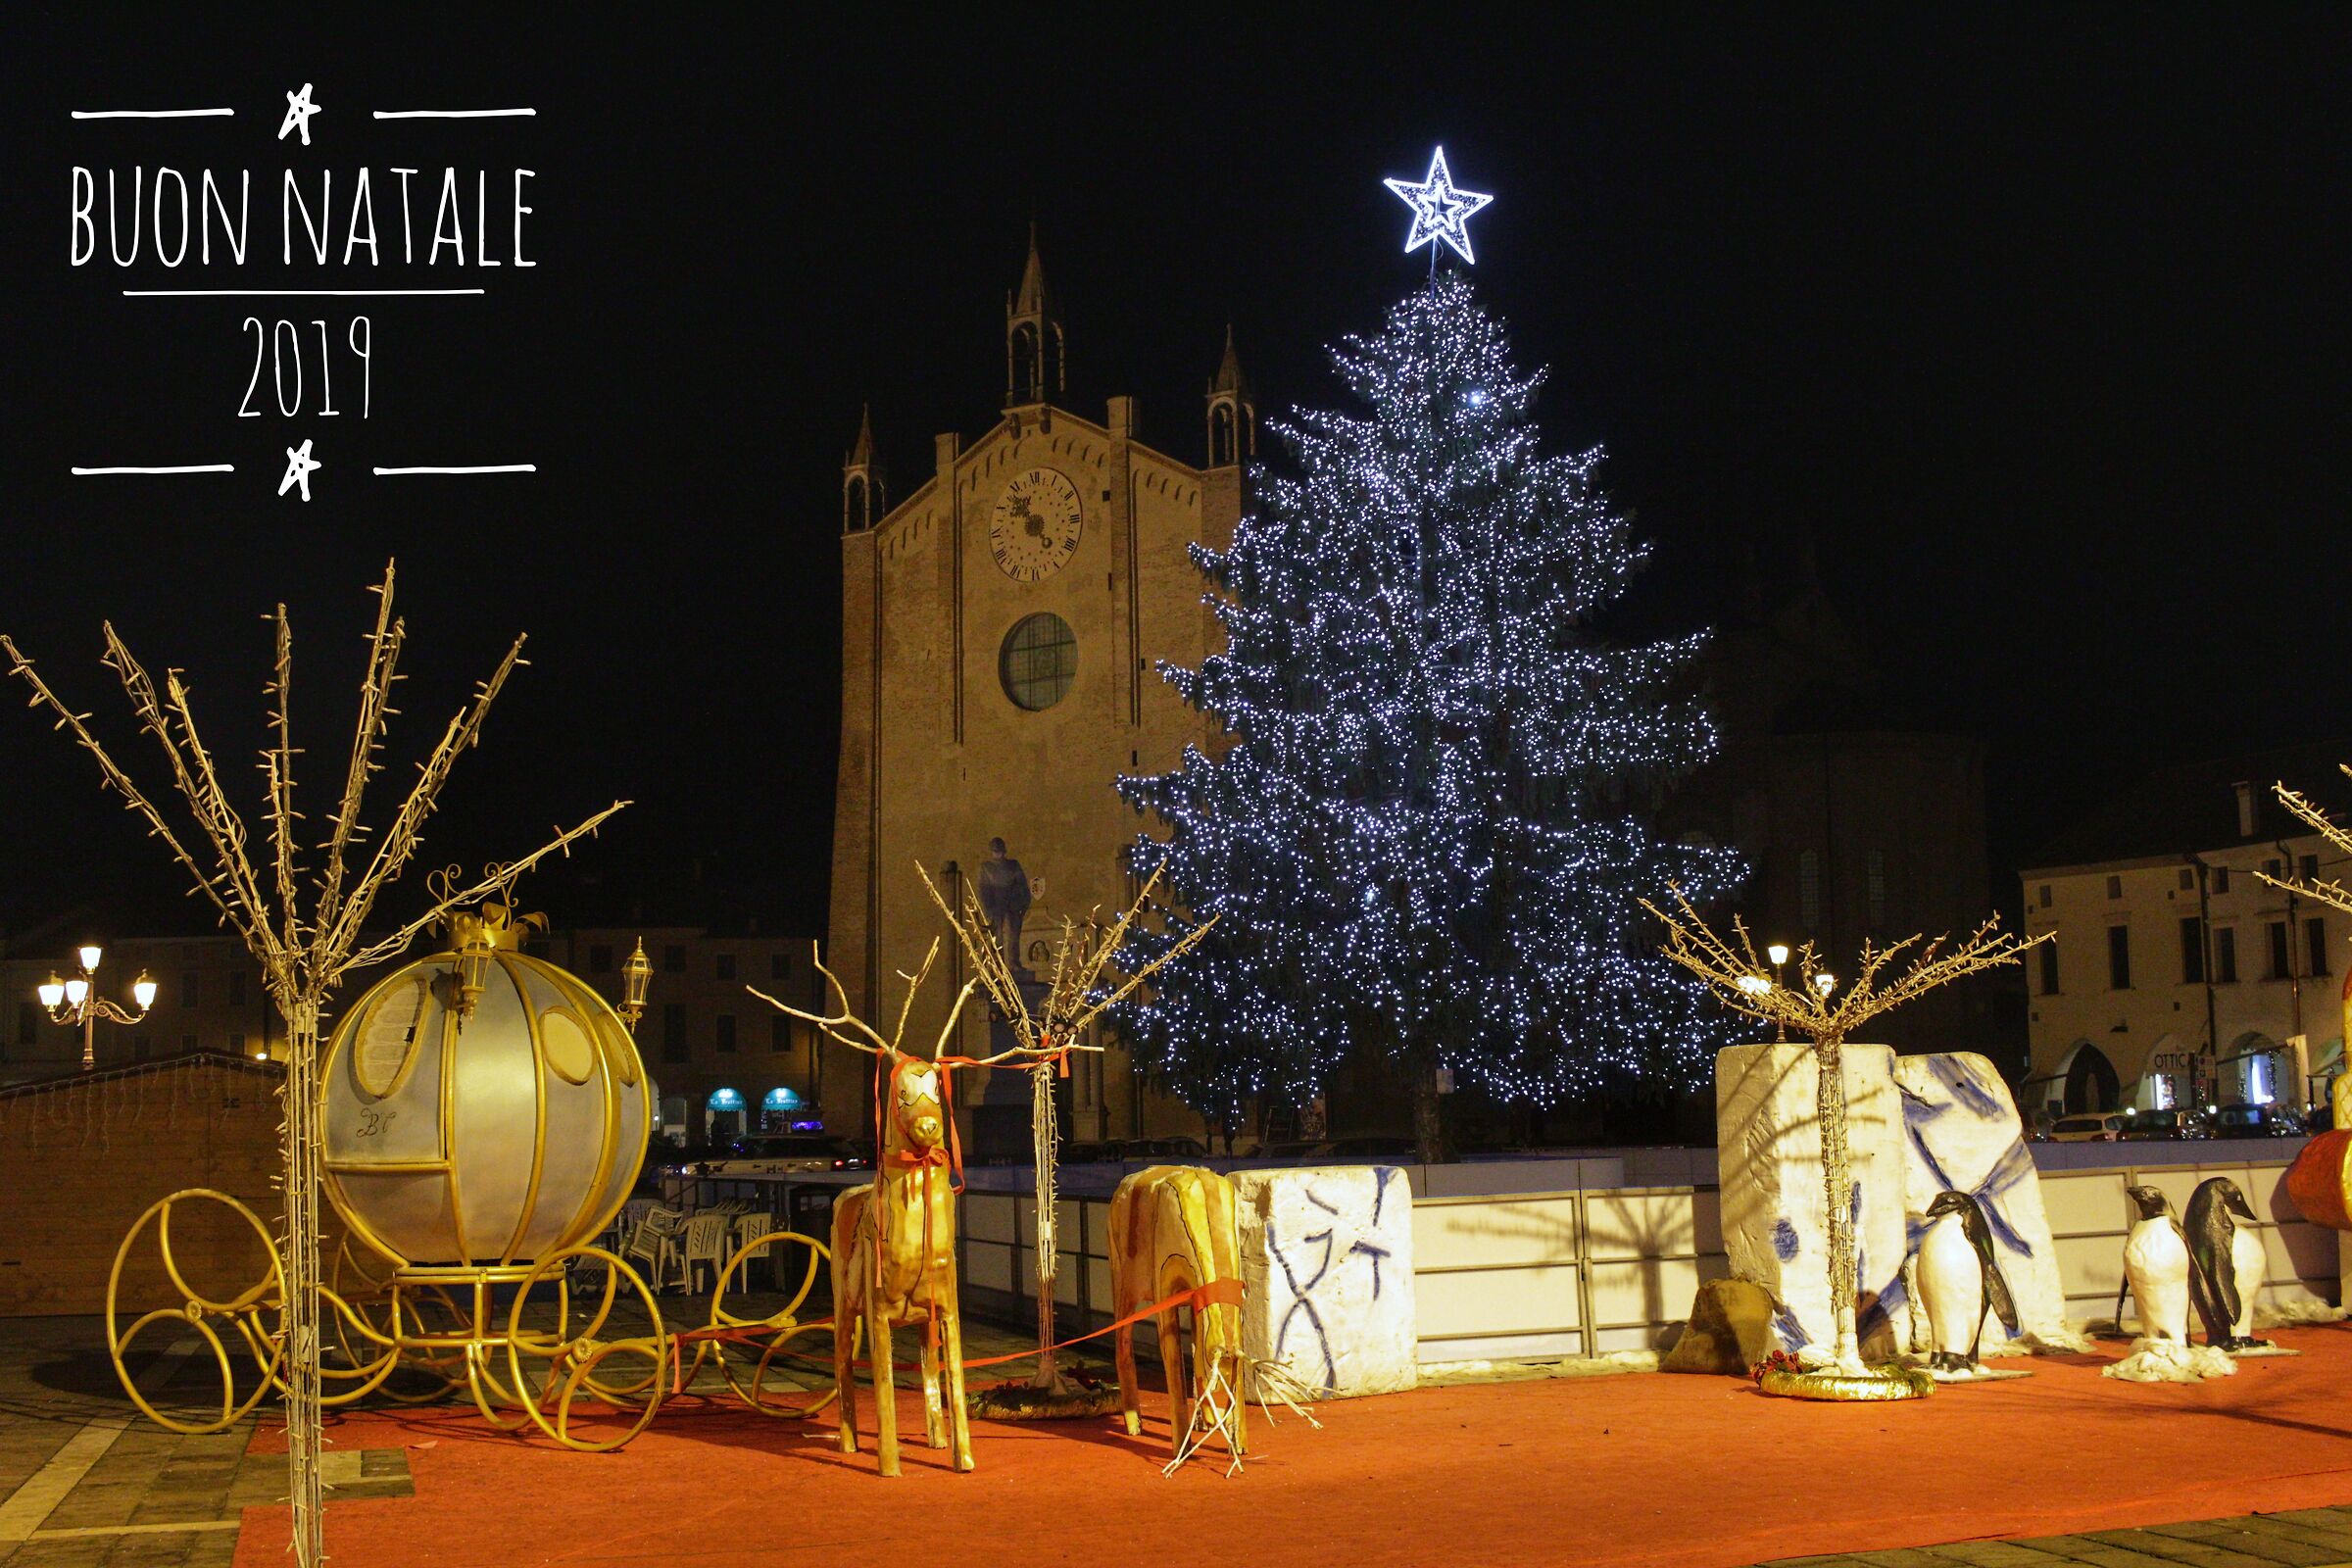 Buon Natale dalla piazza di Montagnana...